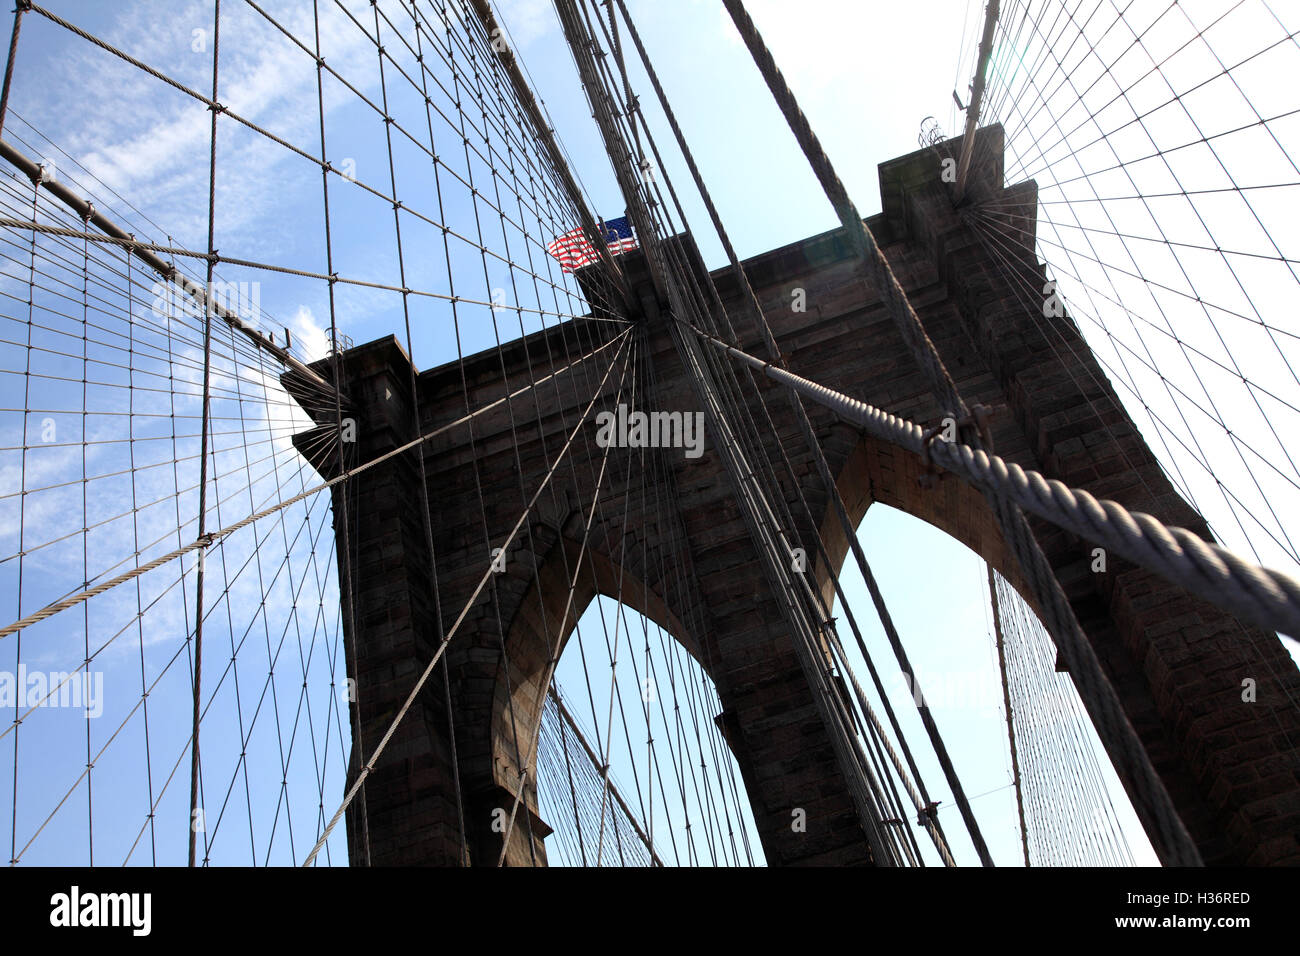 Sospensione di cavi di acciaio del ponte di Brooklyn con il neo-gotica torre del ponte nella rassegna.New York City, Stati Uniti d'America Foto Stock